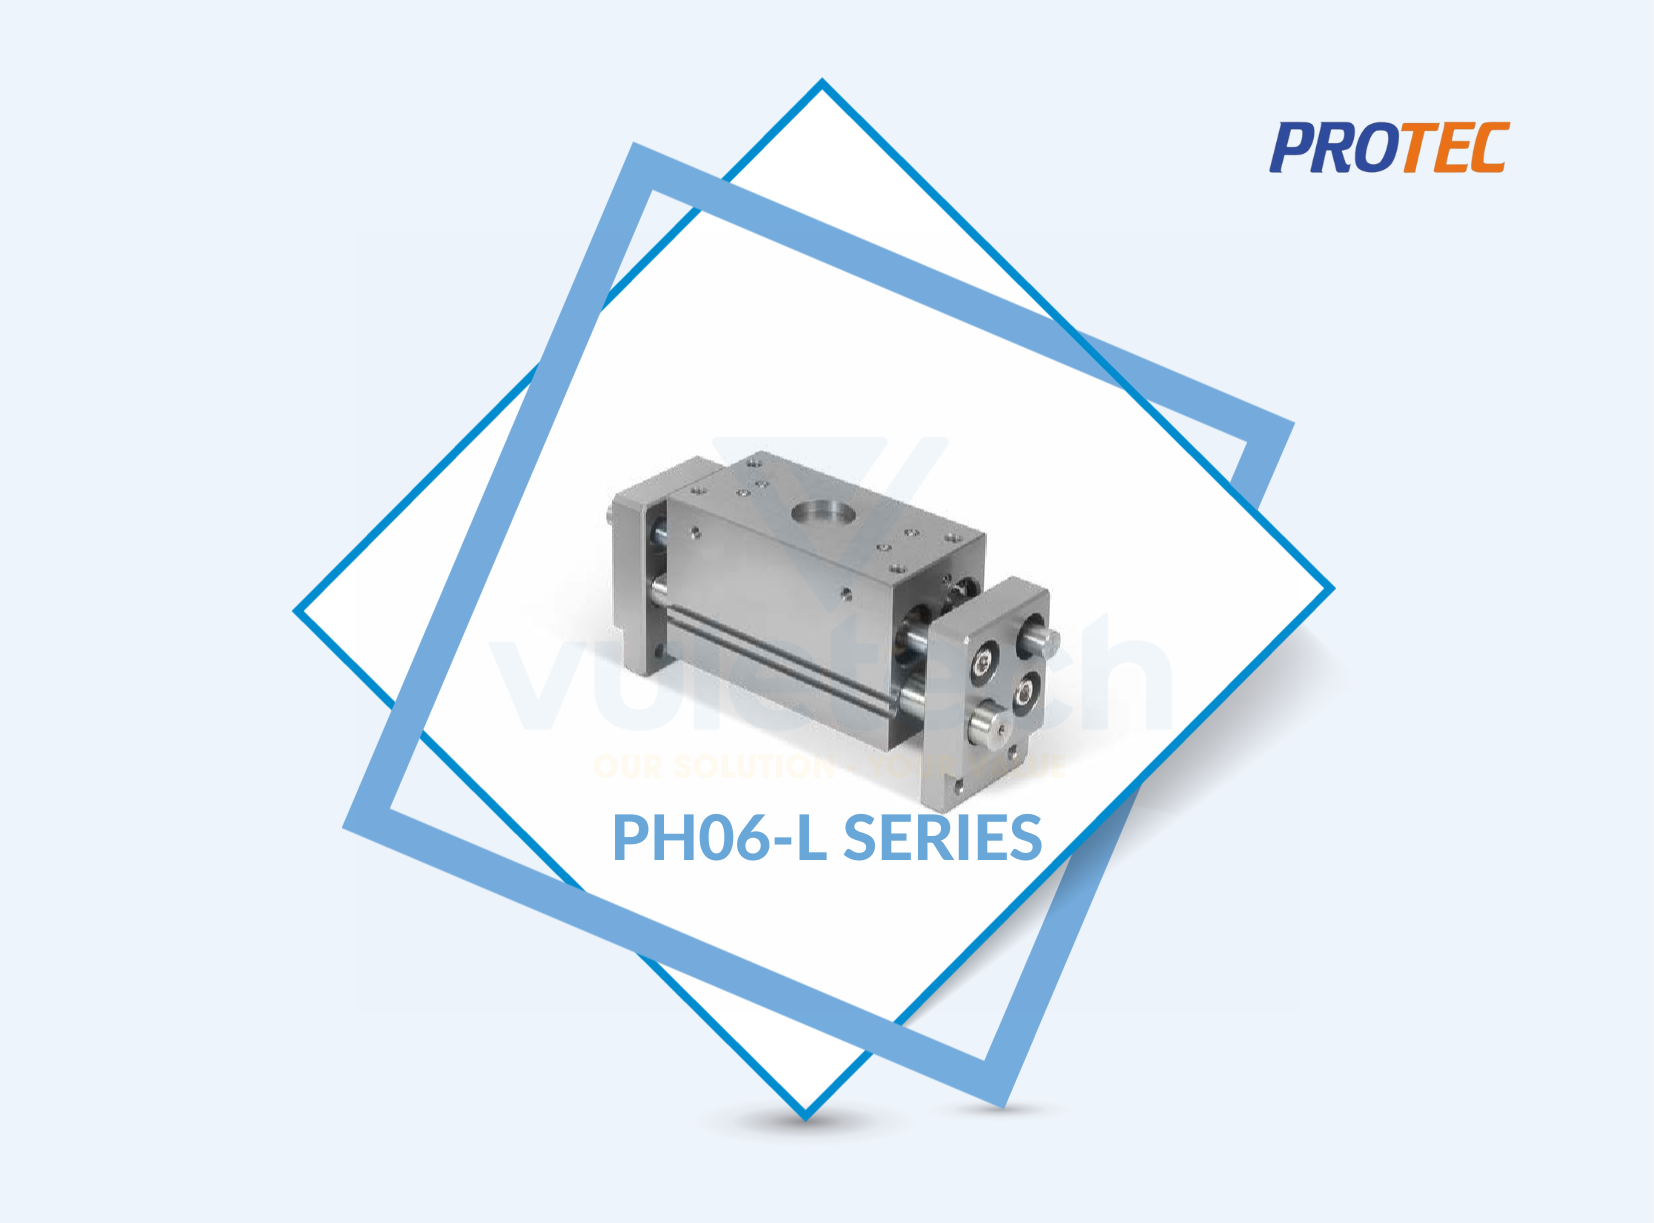 PH06-L Series Protec